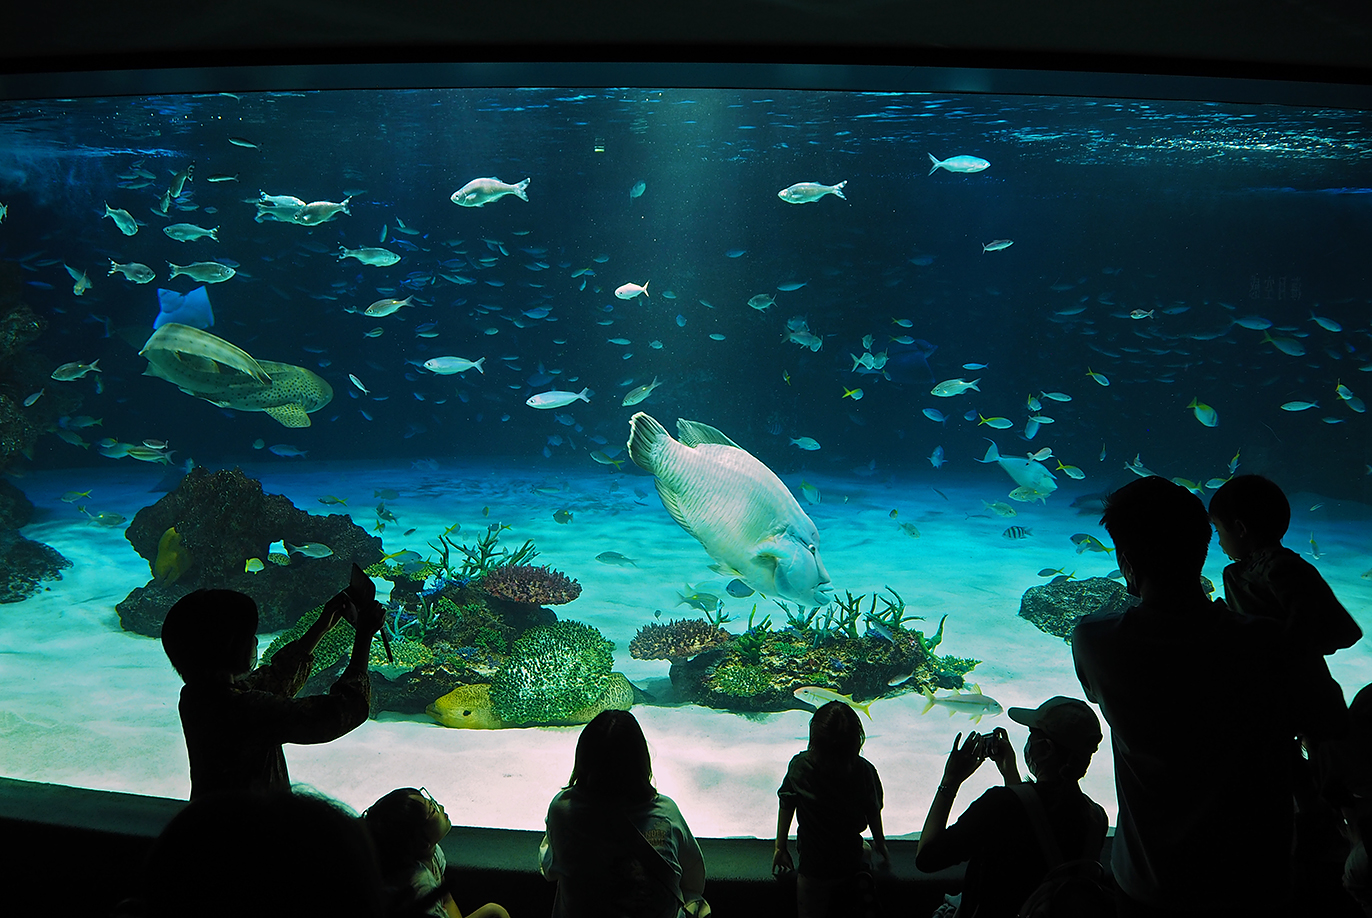 サンシャイン水族館最大の水槽「サンシャインラグーン」